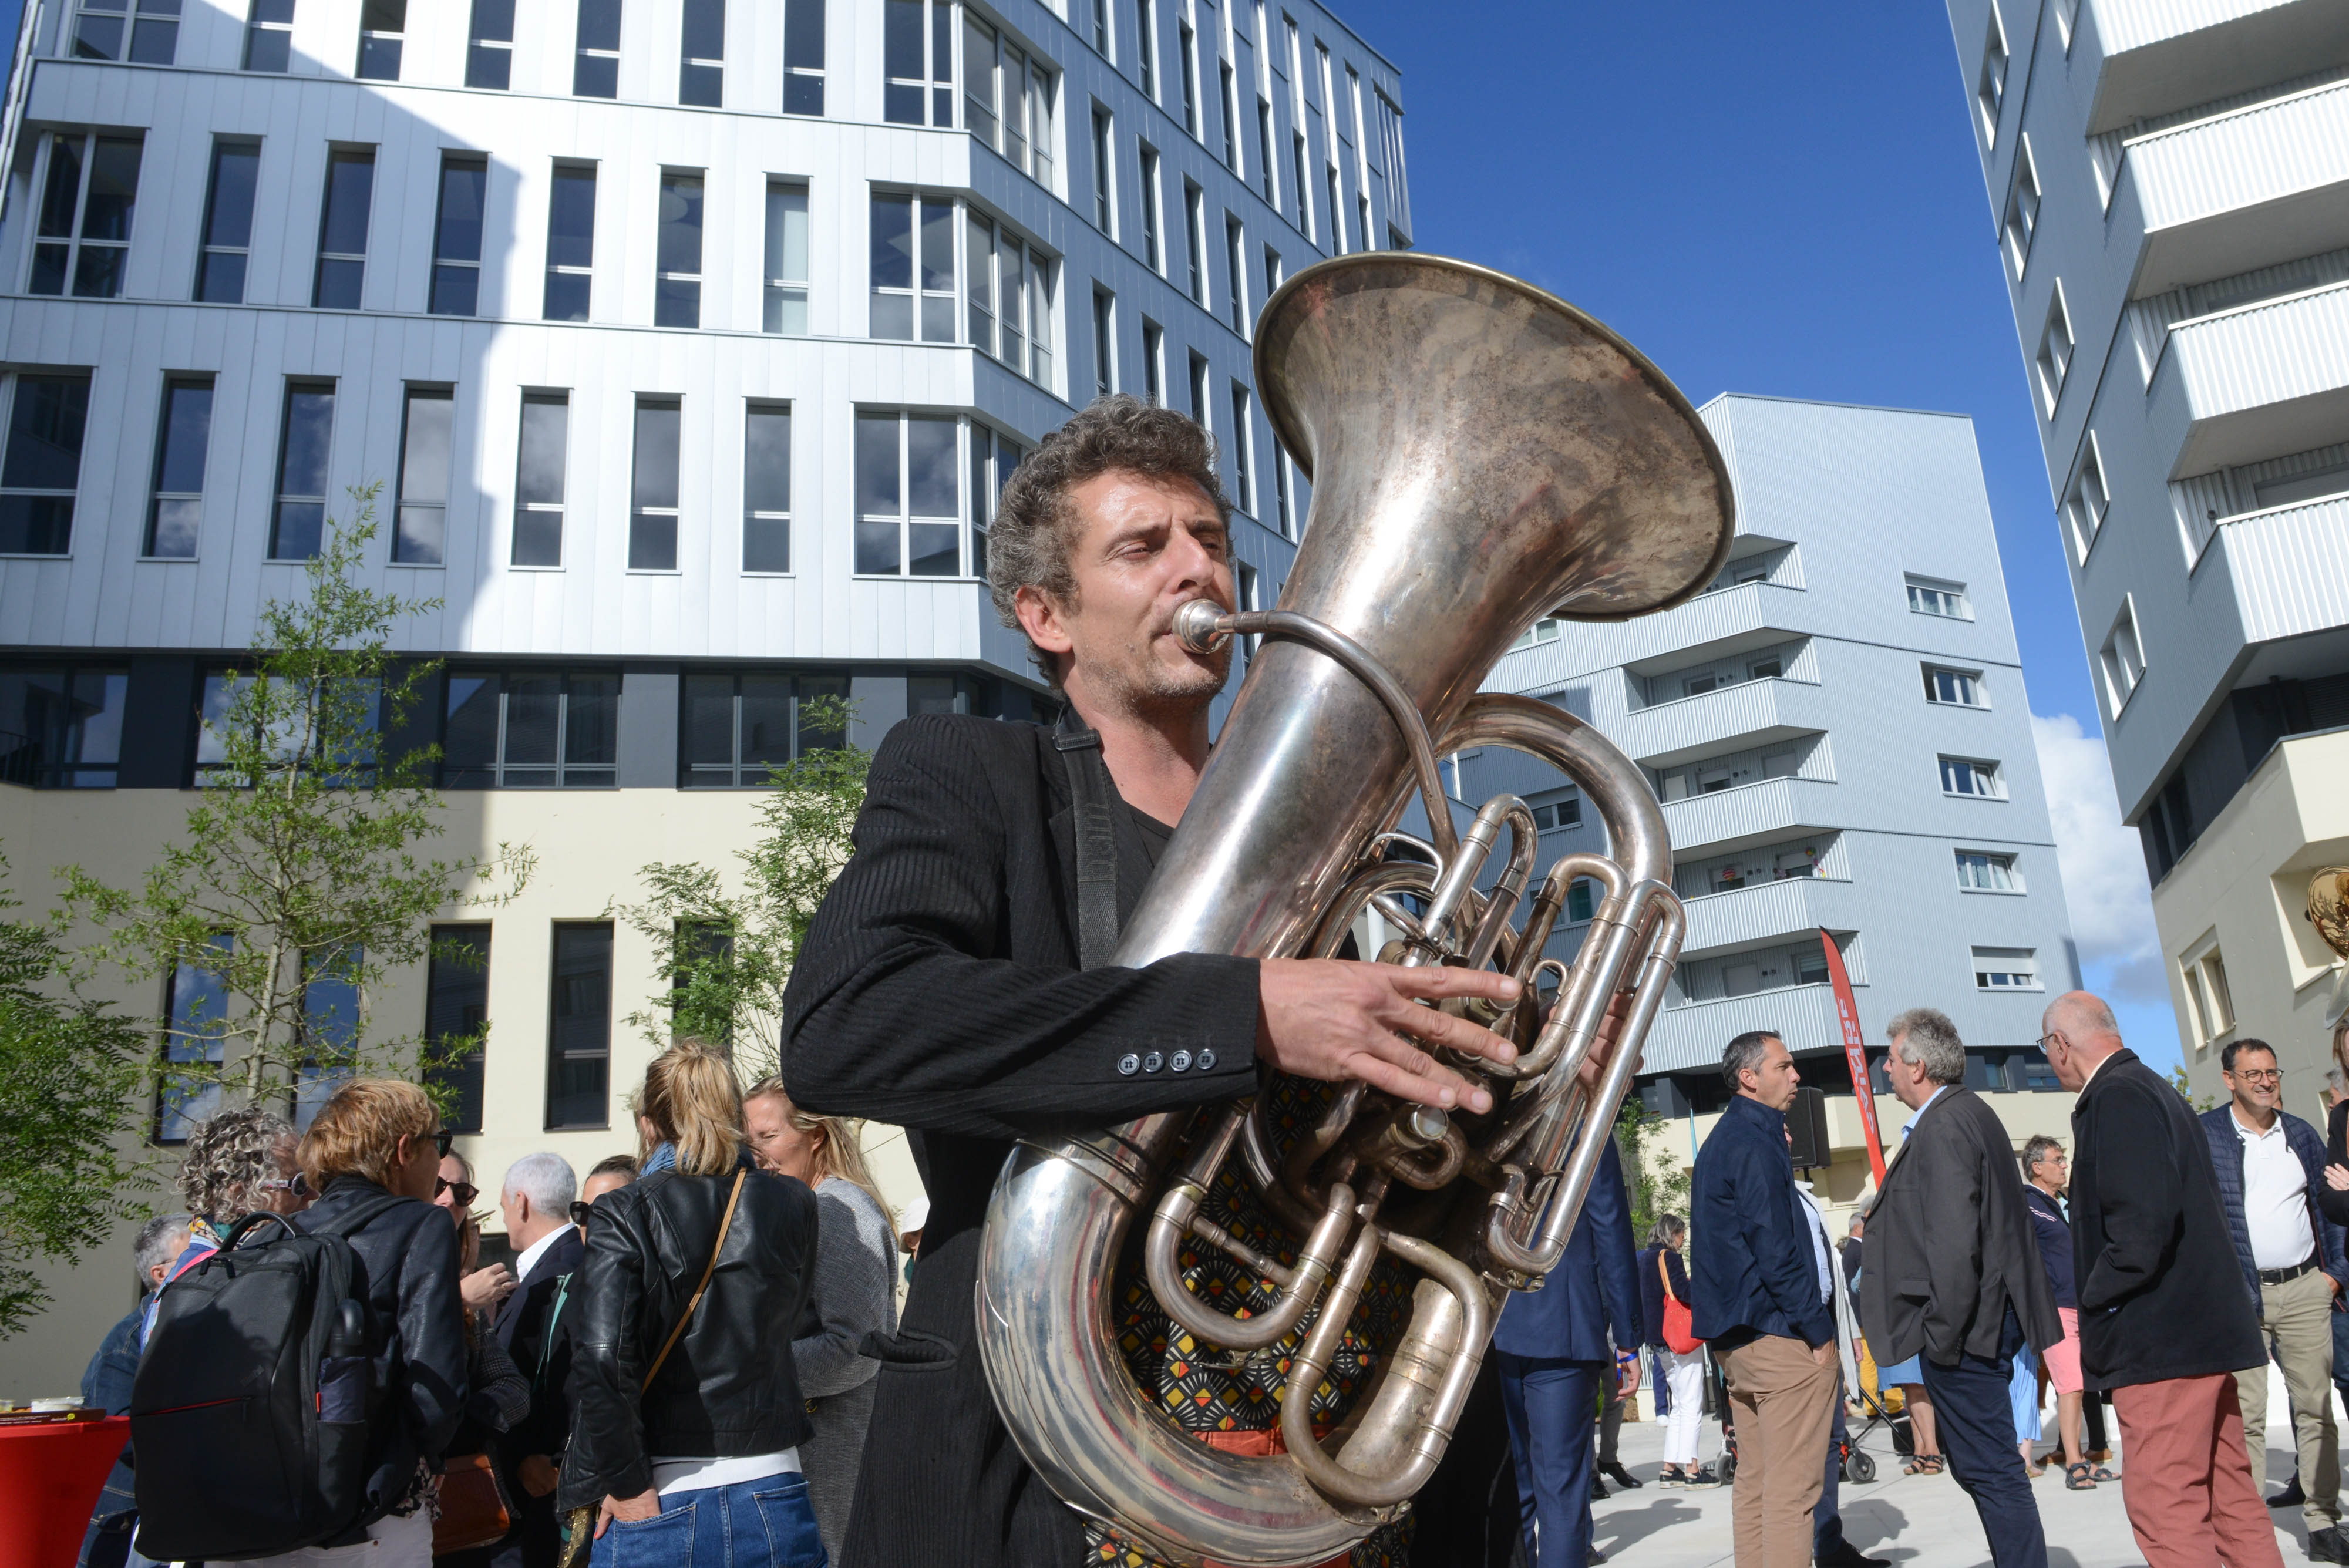 L'inauguration du quartier Willy Brandt s'est déroulée en musique avec la présence de la fanfare Gloups le mercredi 30 juin 2022 ©Bruno Bouvry - Ville de Saint-Nazaire